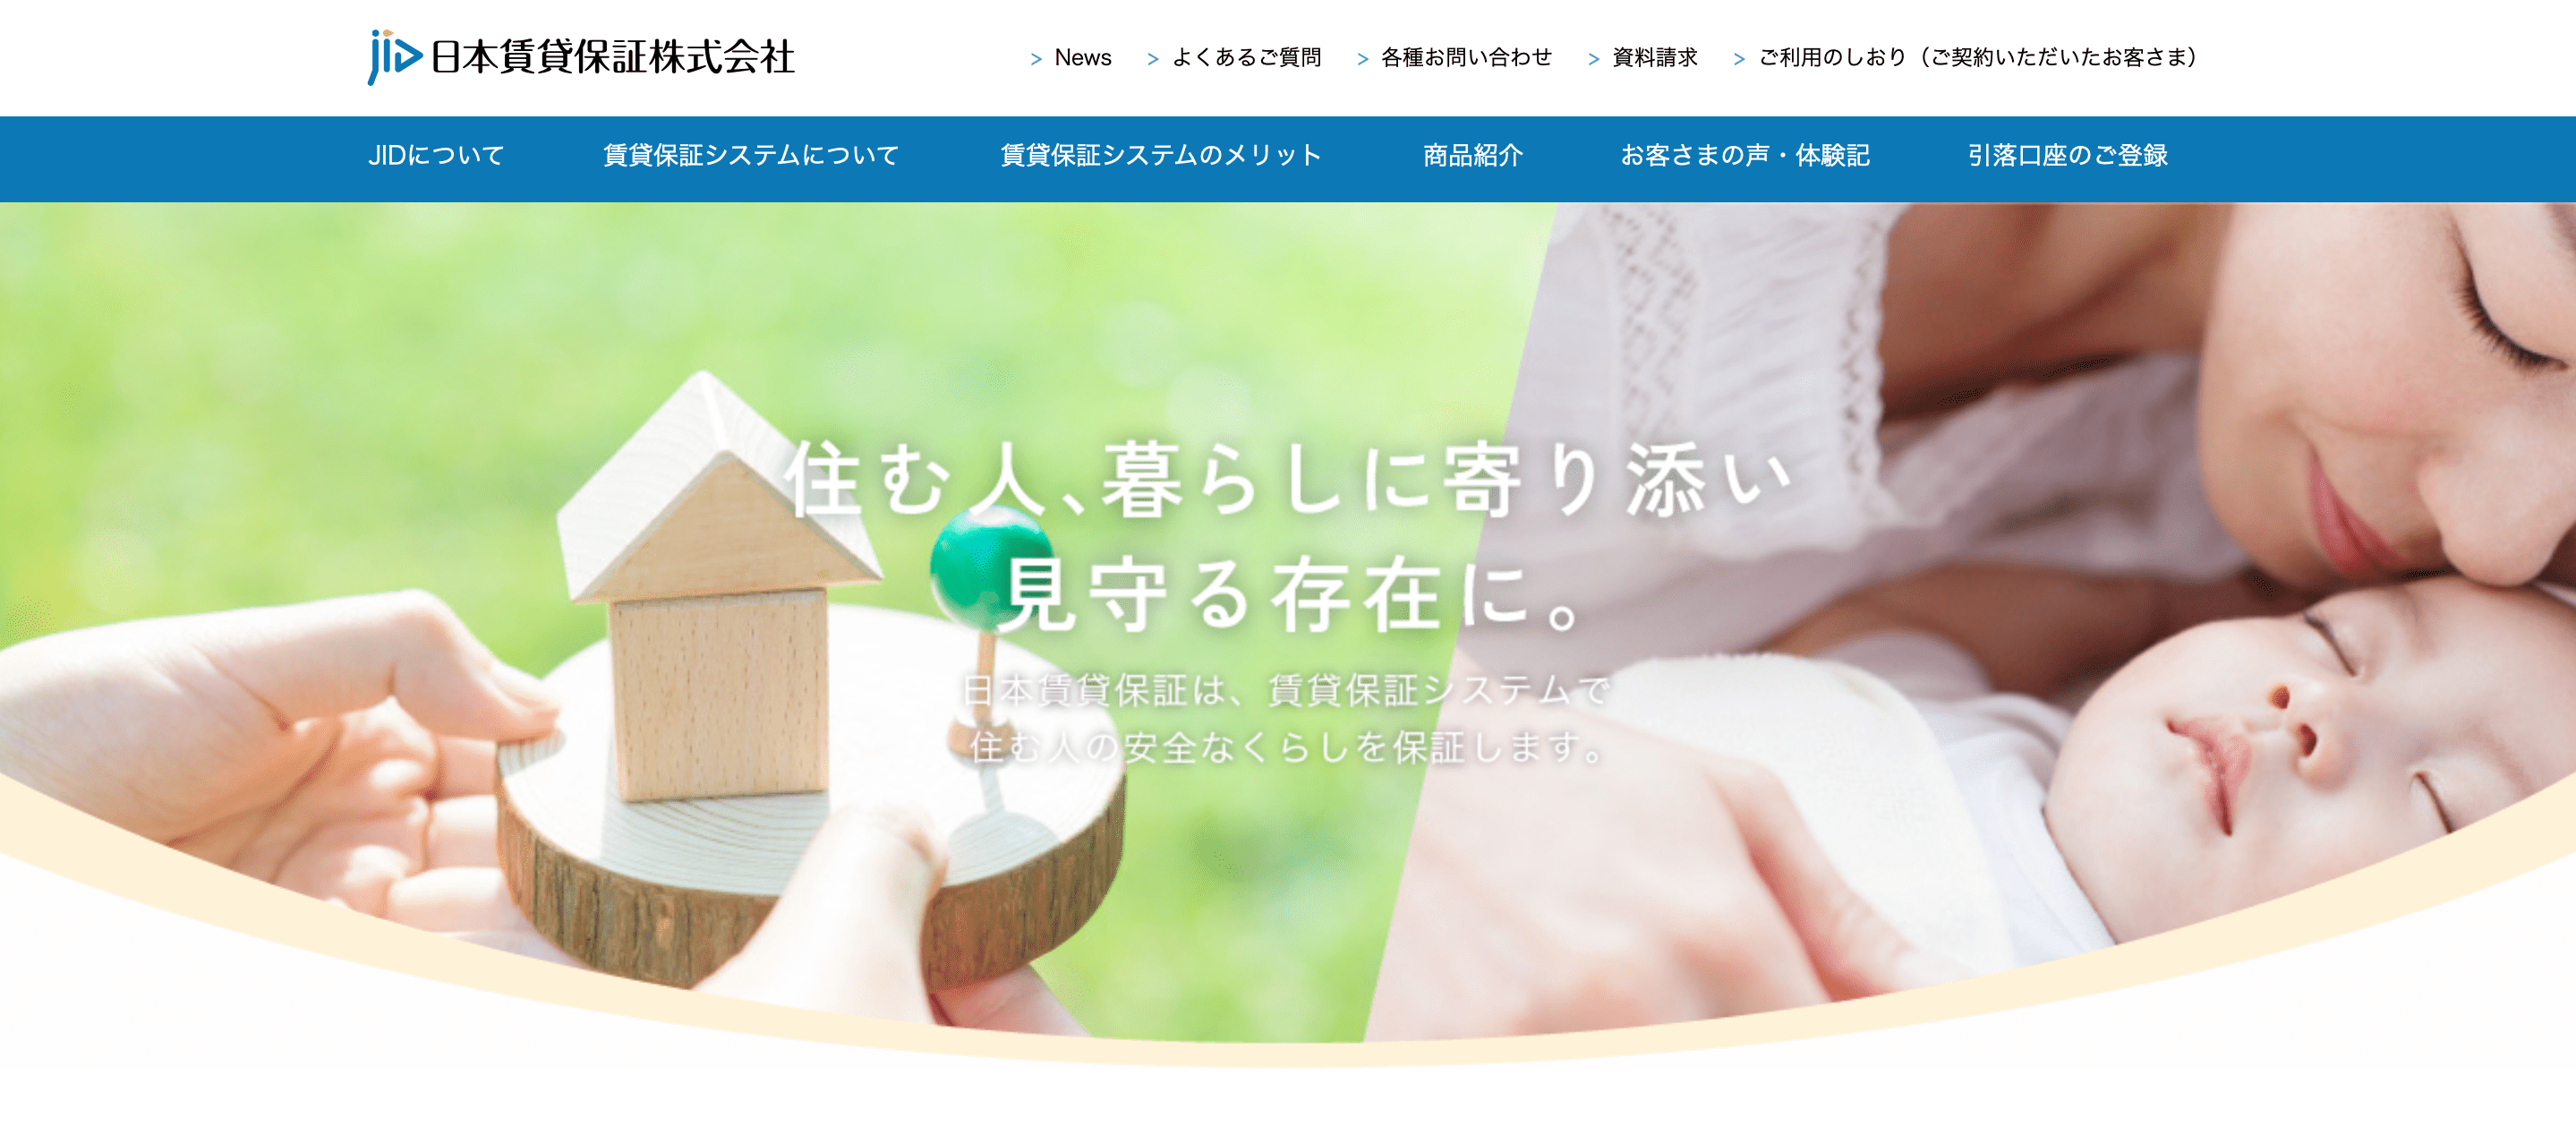 日本賃貸保証の公式HP